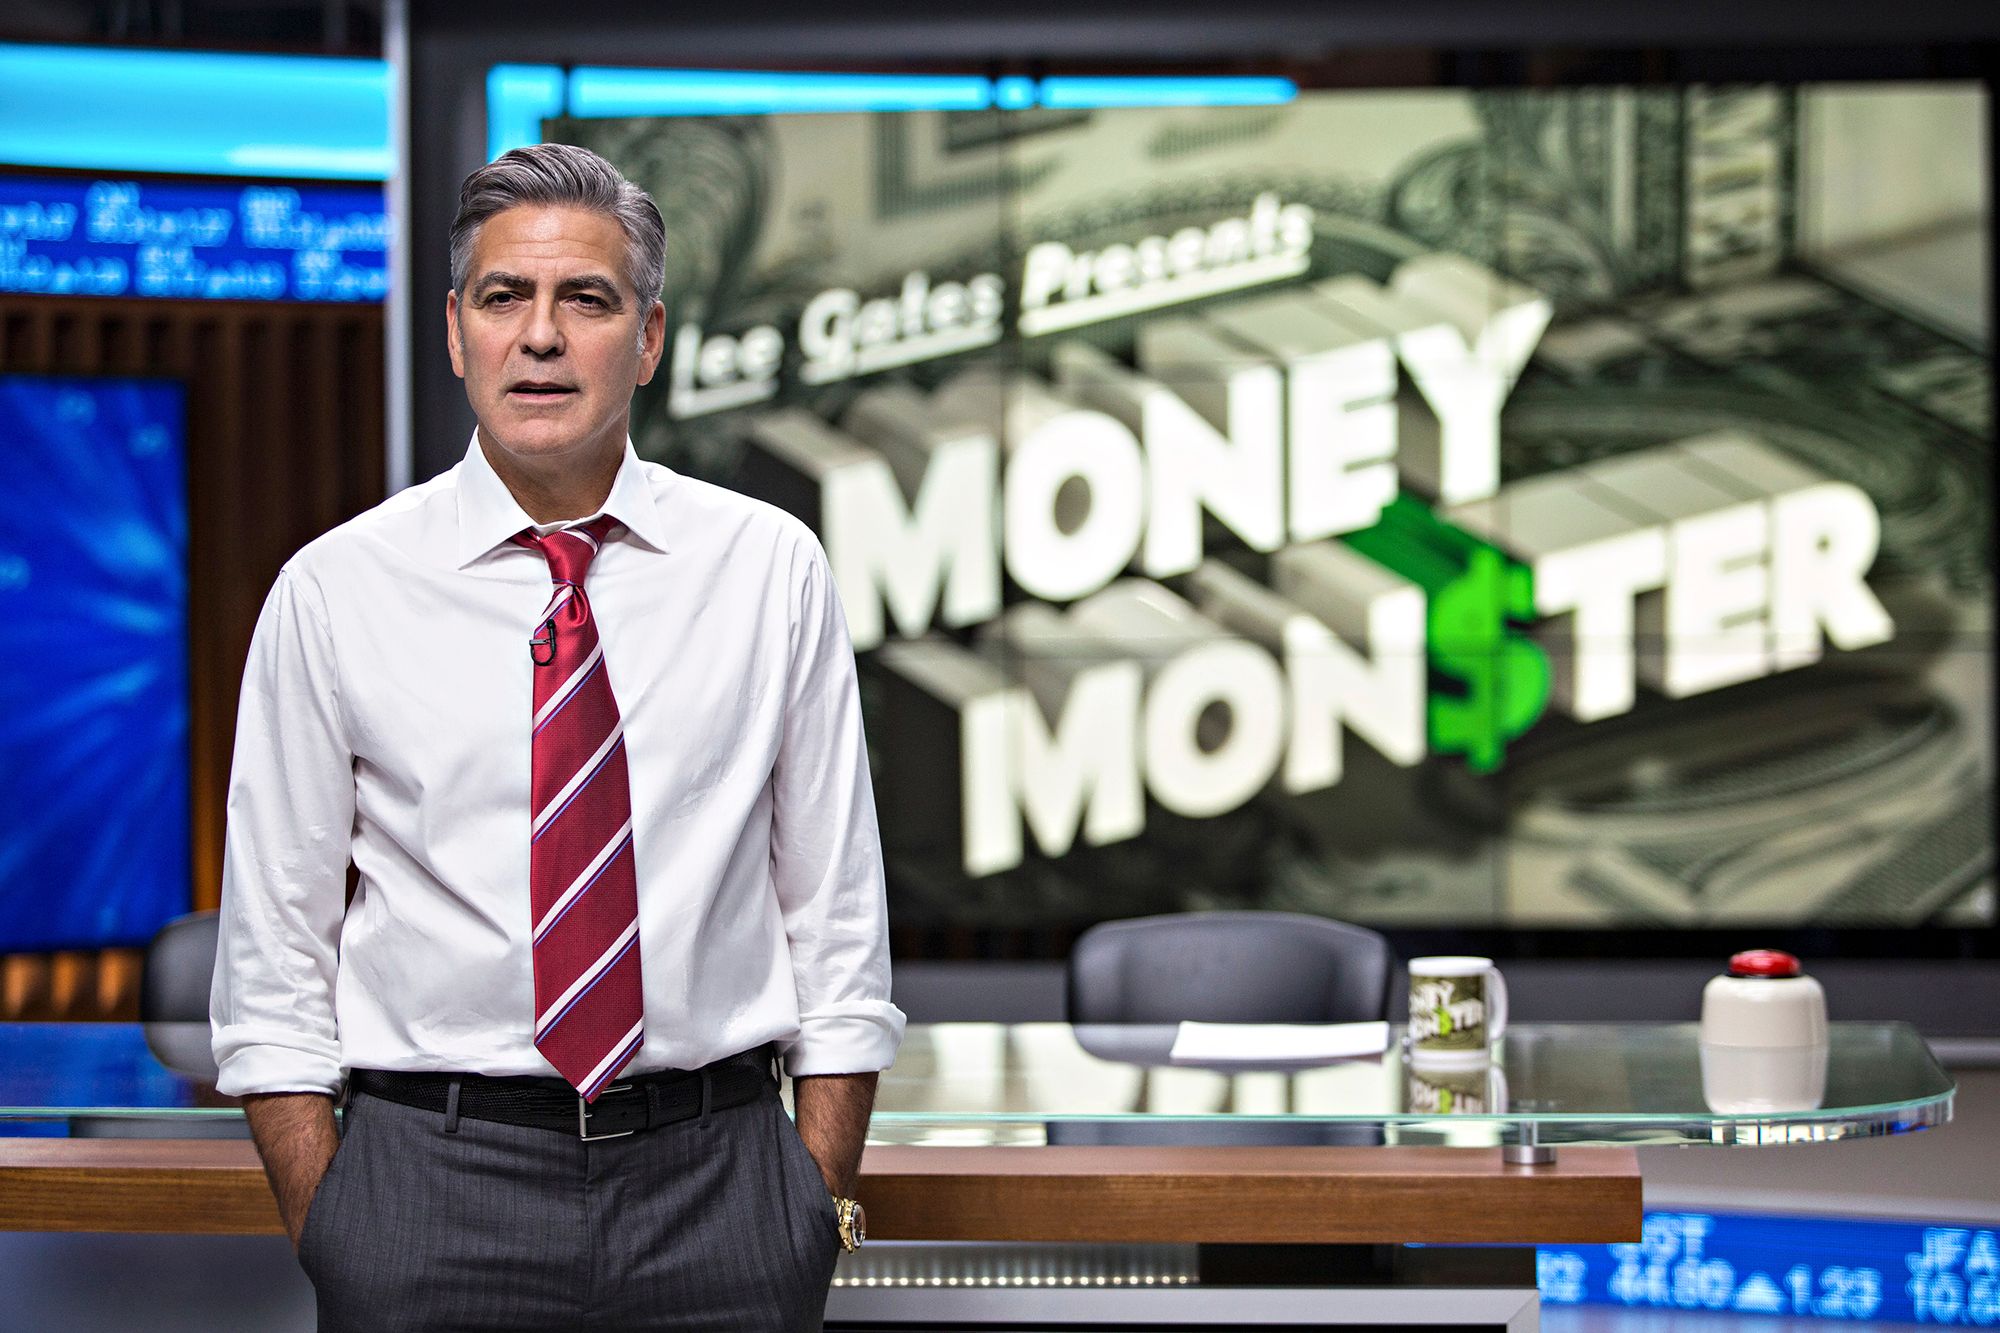 George Clooney näyttelee pörssiohjelman juontajaa, joka joutuu tiukkaan paikkaan.  © Ylen kuvapalvelu